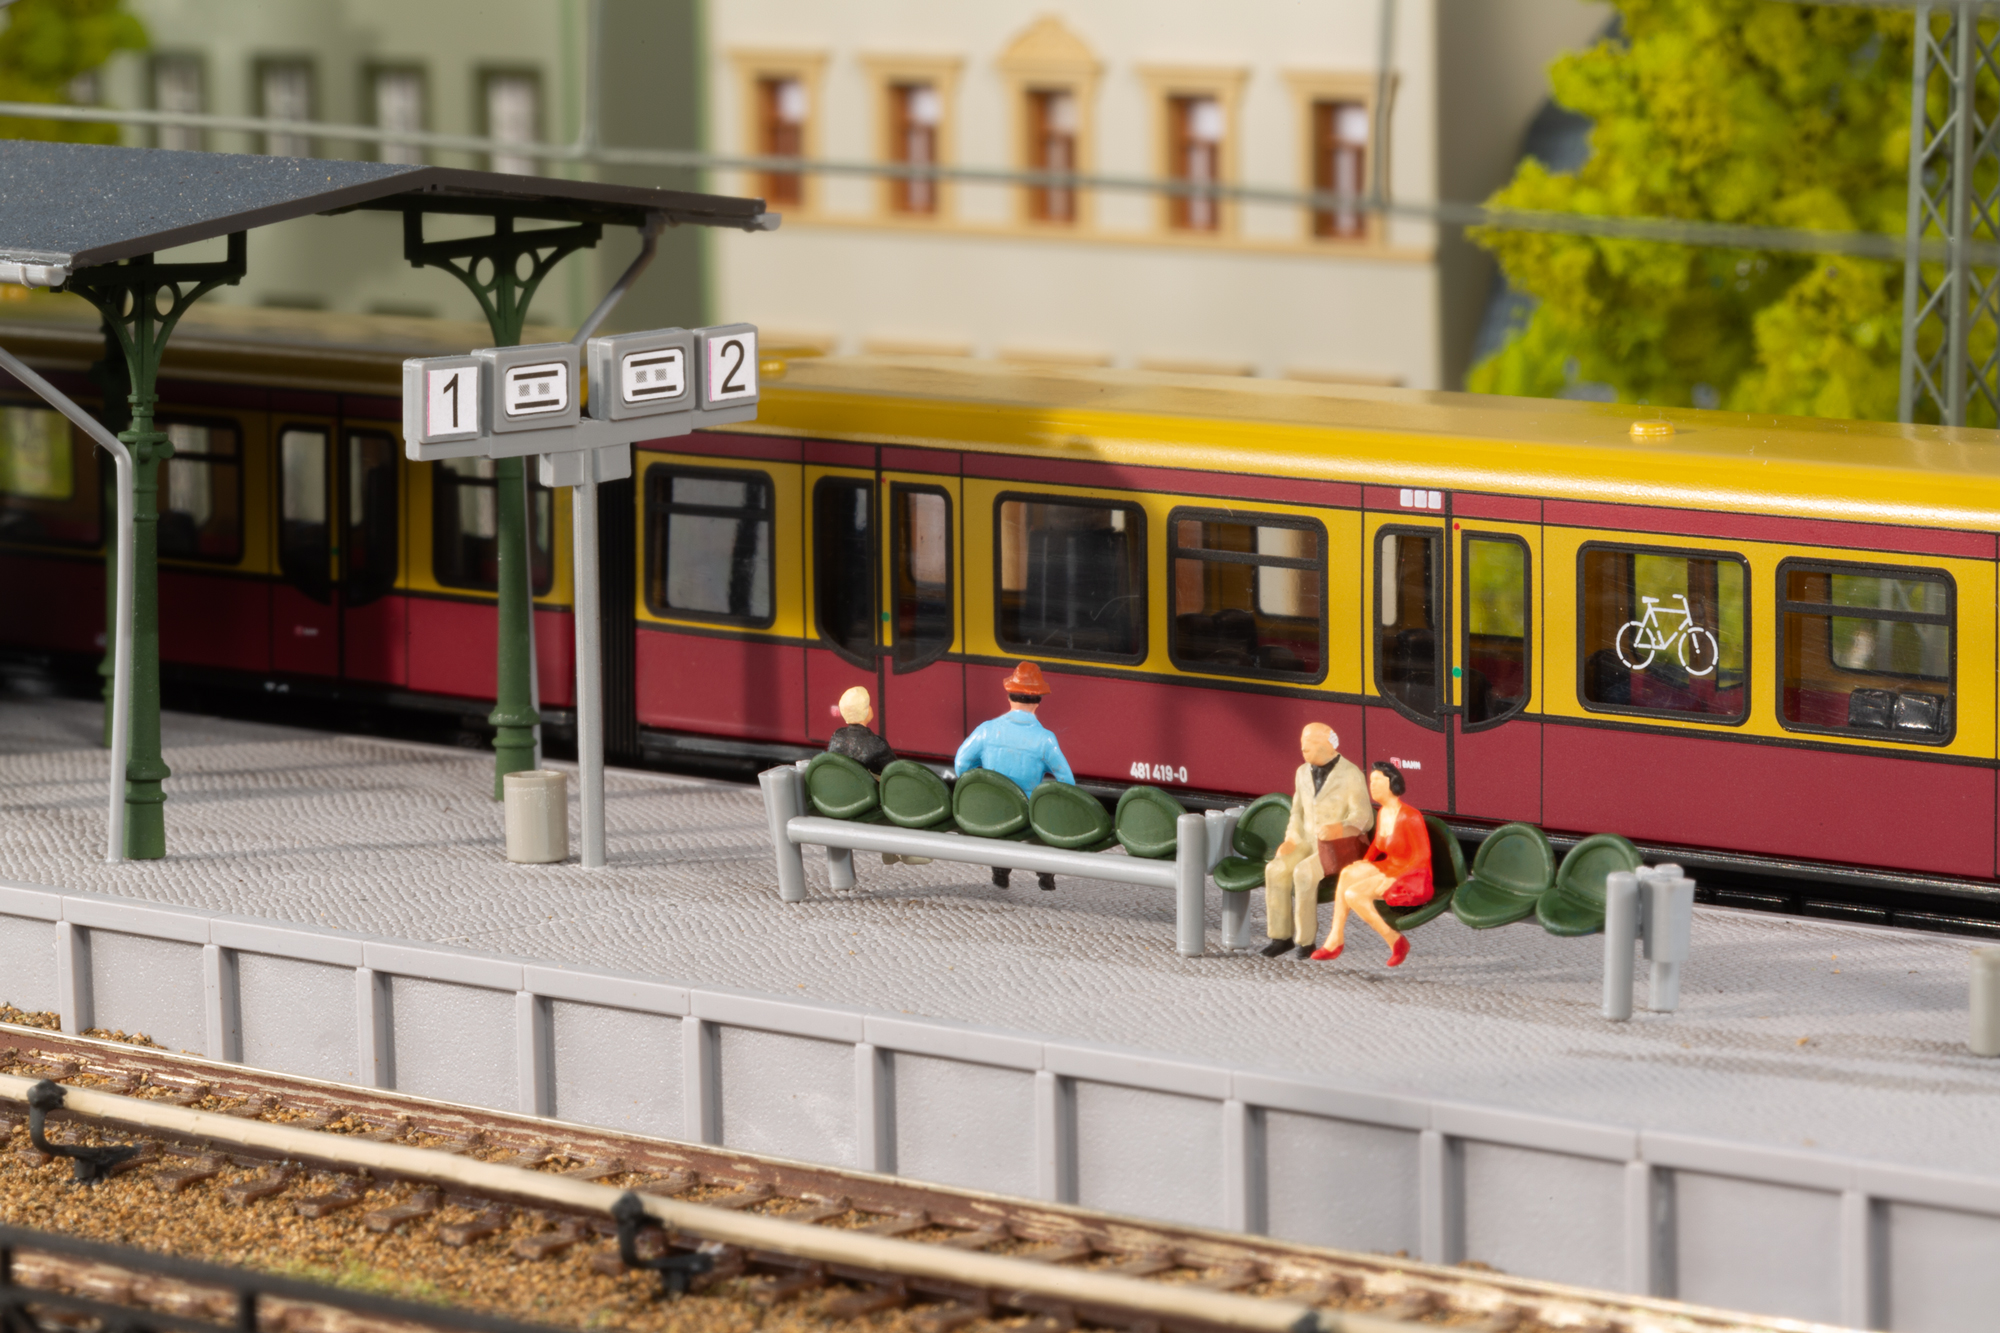 S-Bahn platform accessories